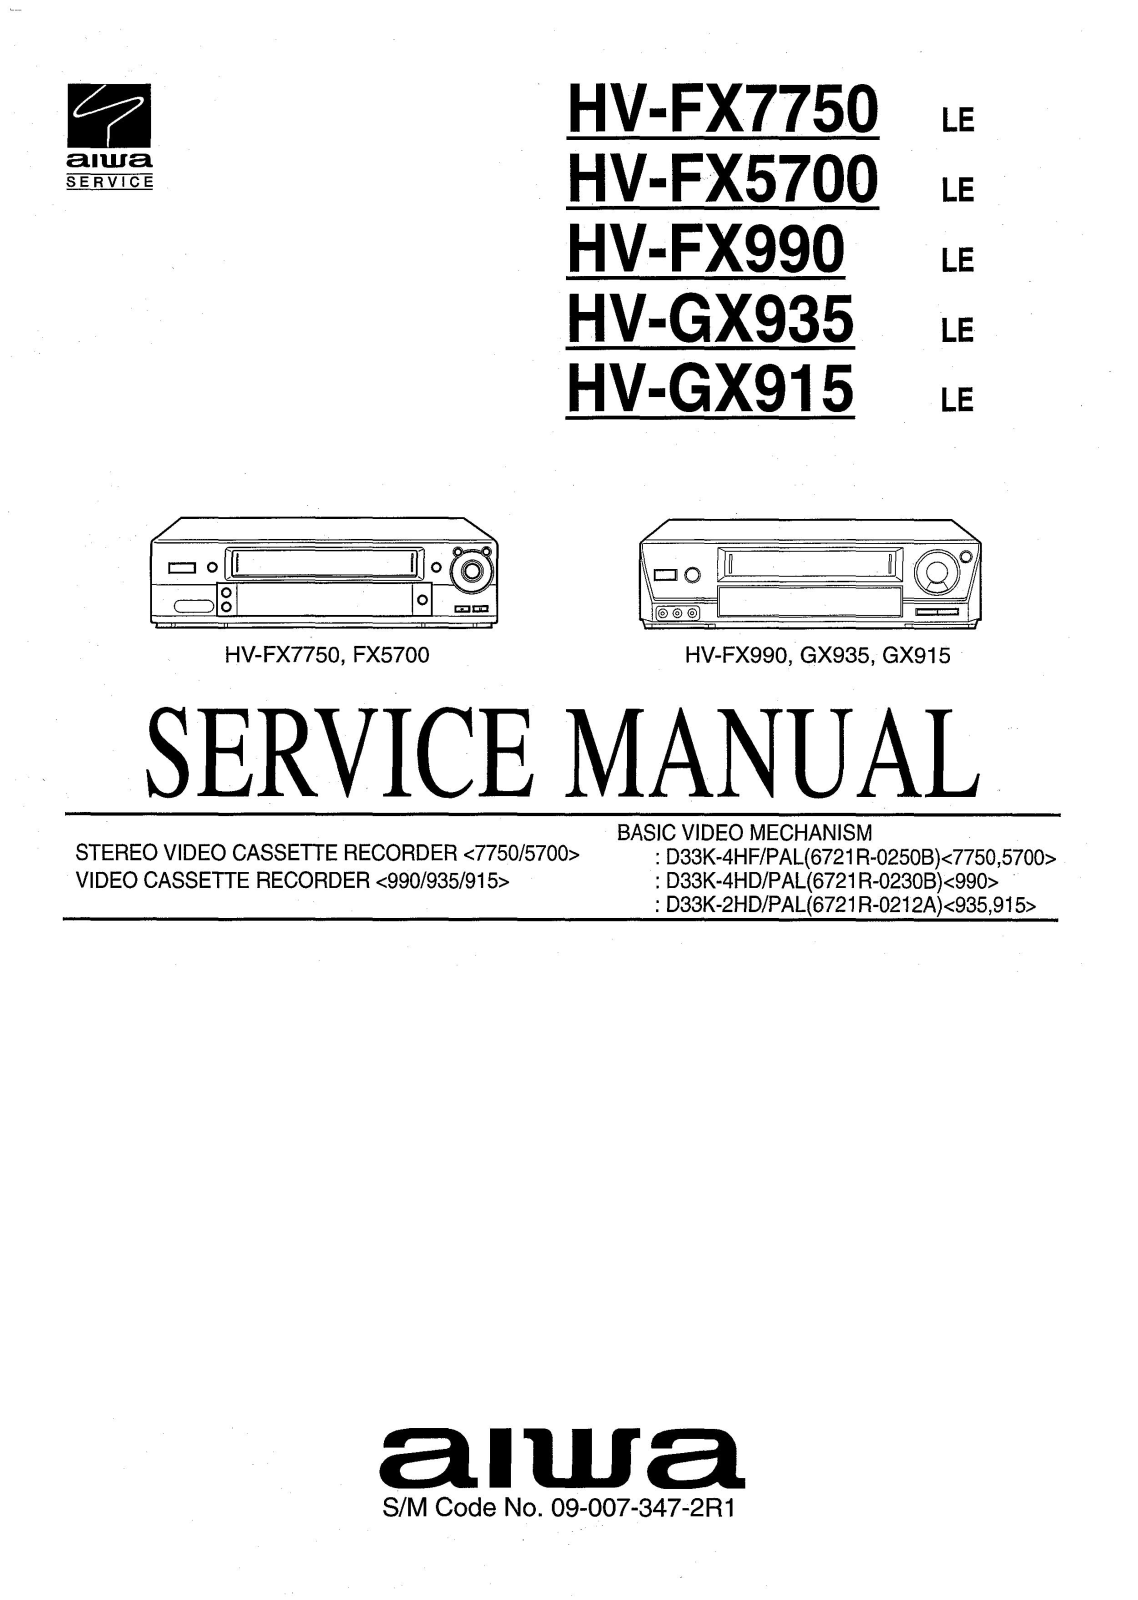 Aiwa hv fx7750, hv fx5700, hv fx990, hv gx935, hv gx915 Service Manual